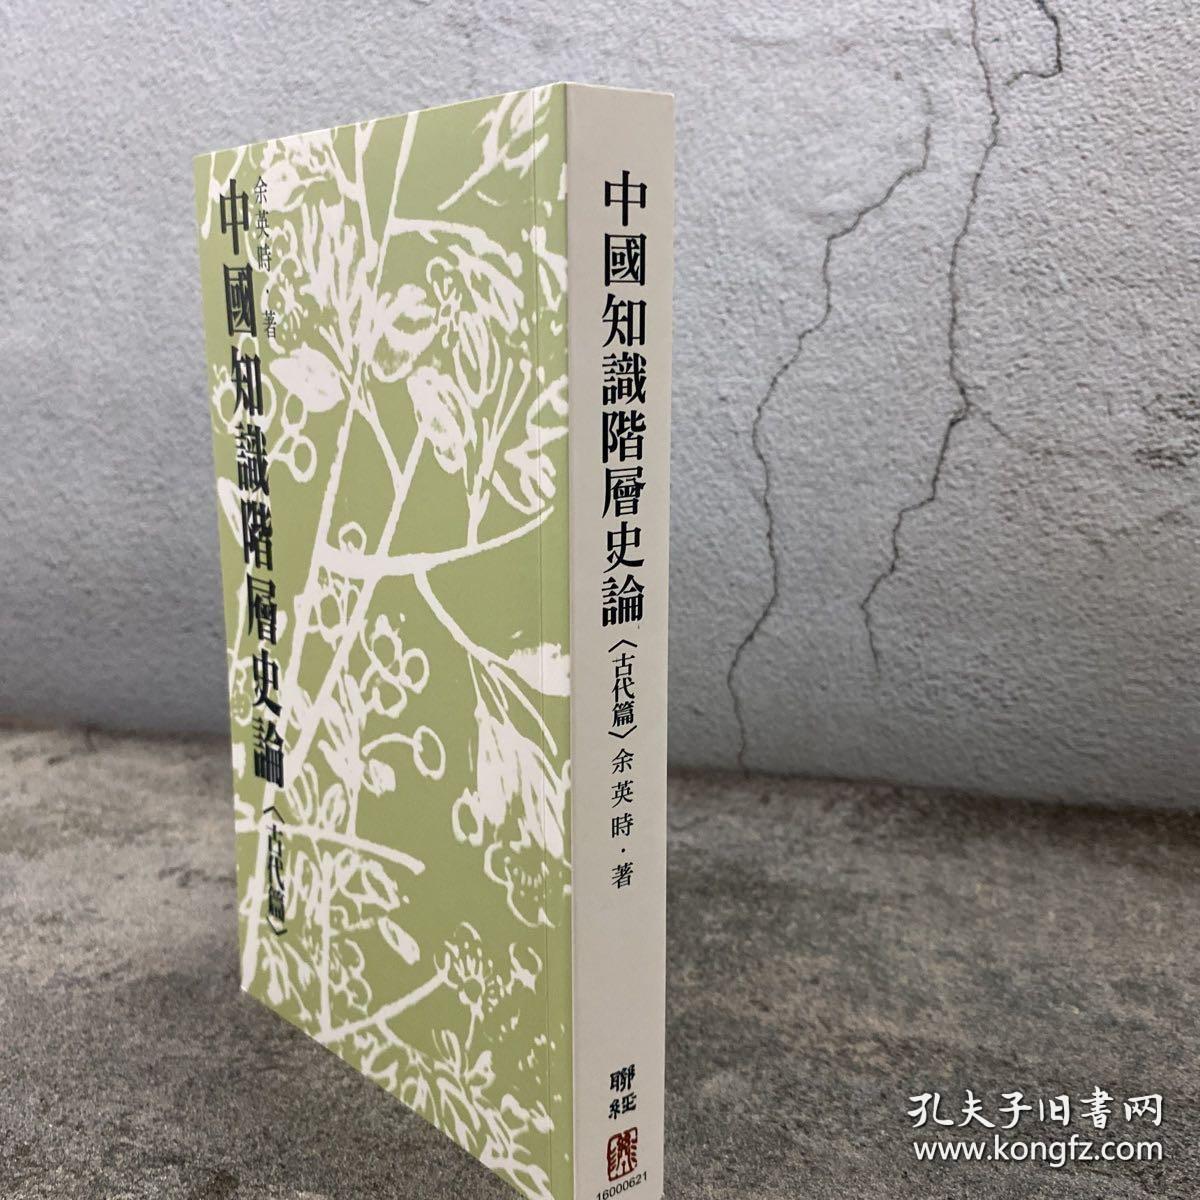 余英时 · 台湾联经版《中國知識階層史論（古代篇）》（锁线胶订；繁体竖排）